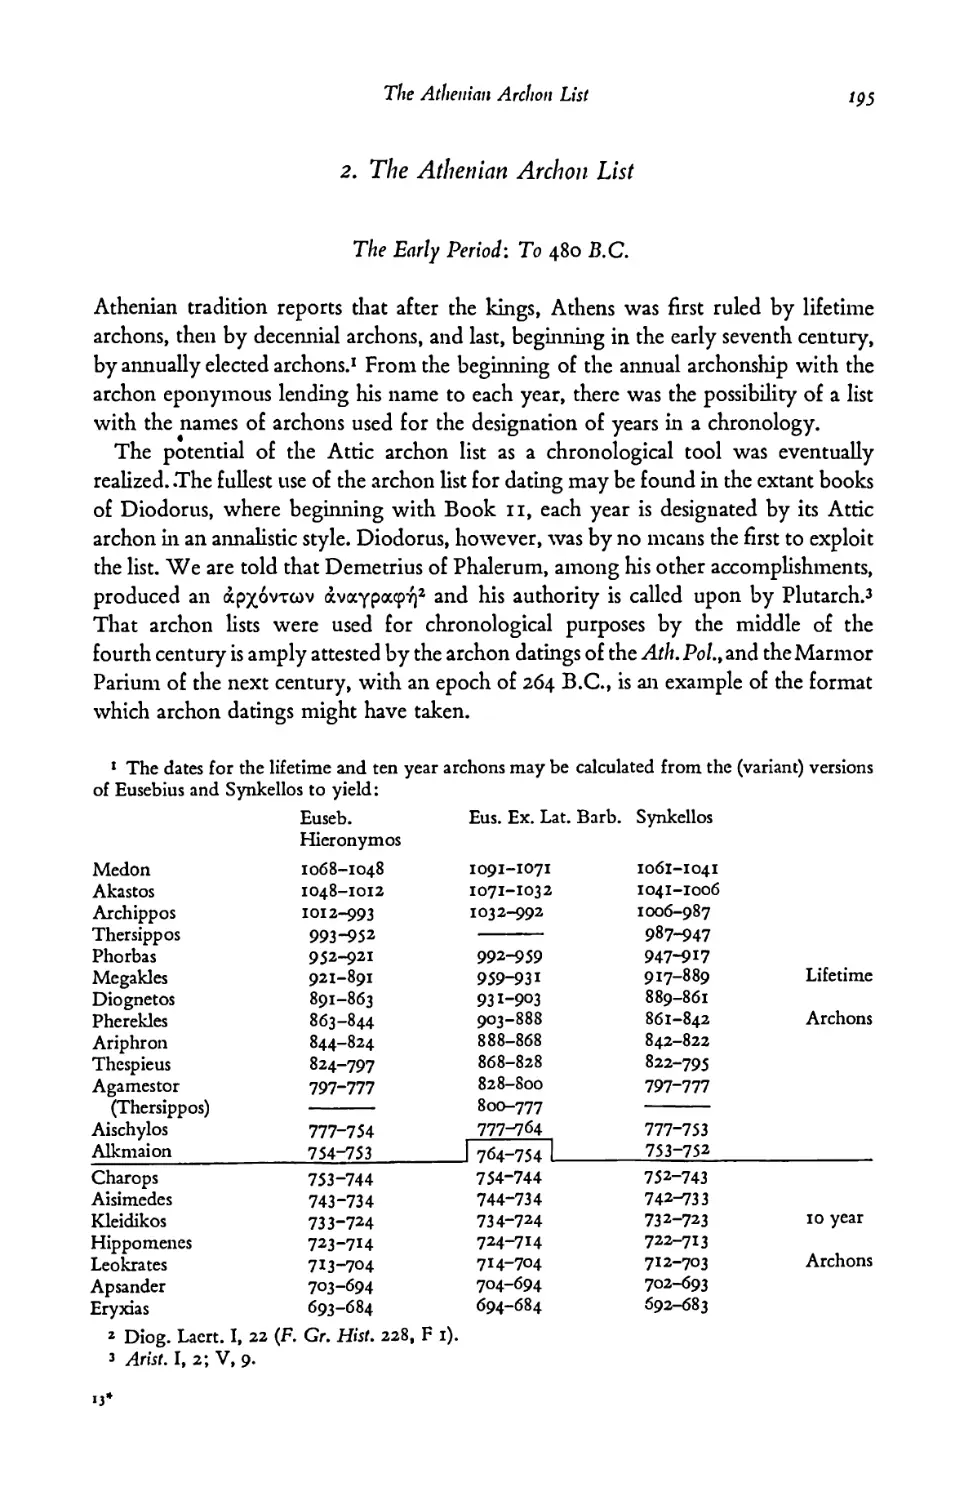 2. The Athenian Archon List